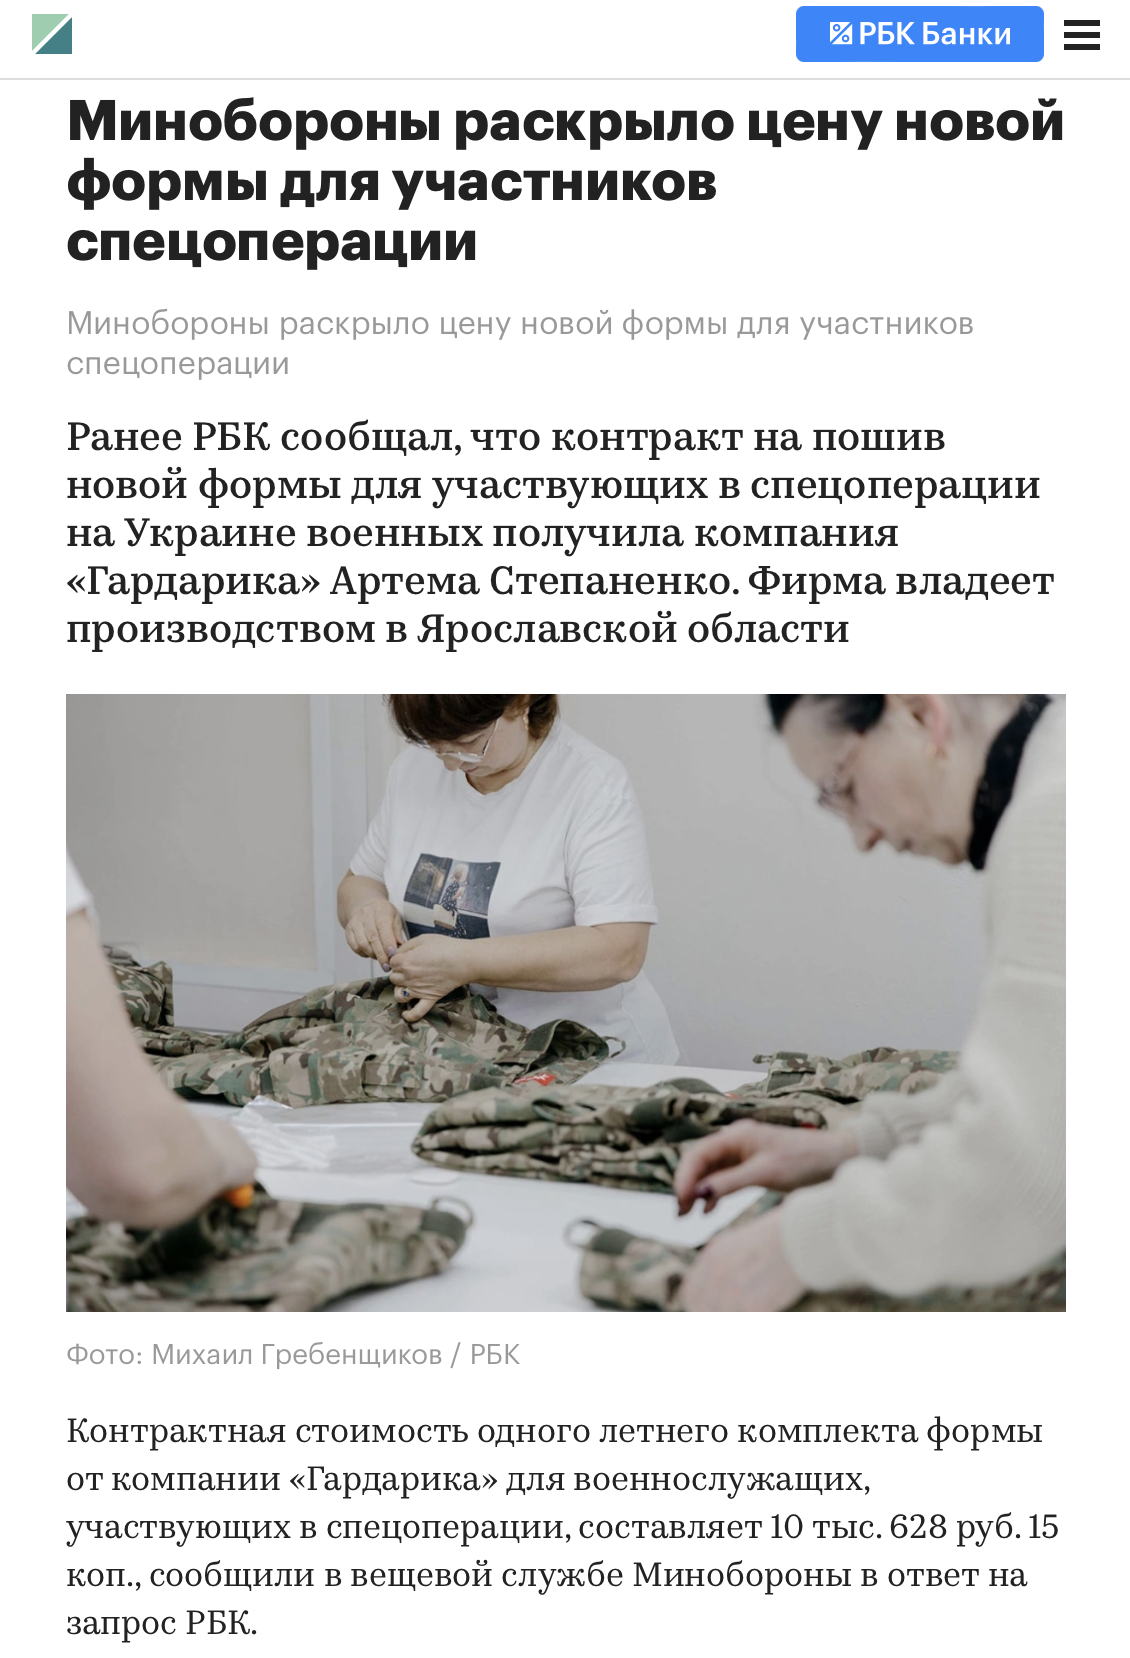 Российское Минобороны закупает форму для военных по 140 тысяч рублей и более